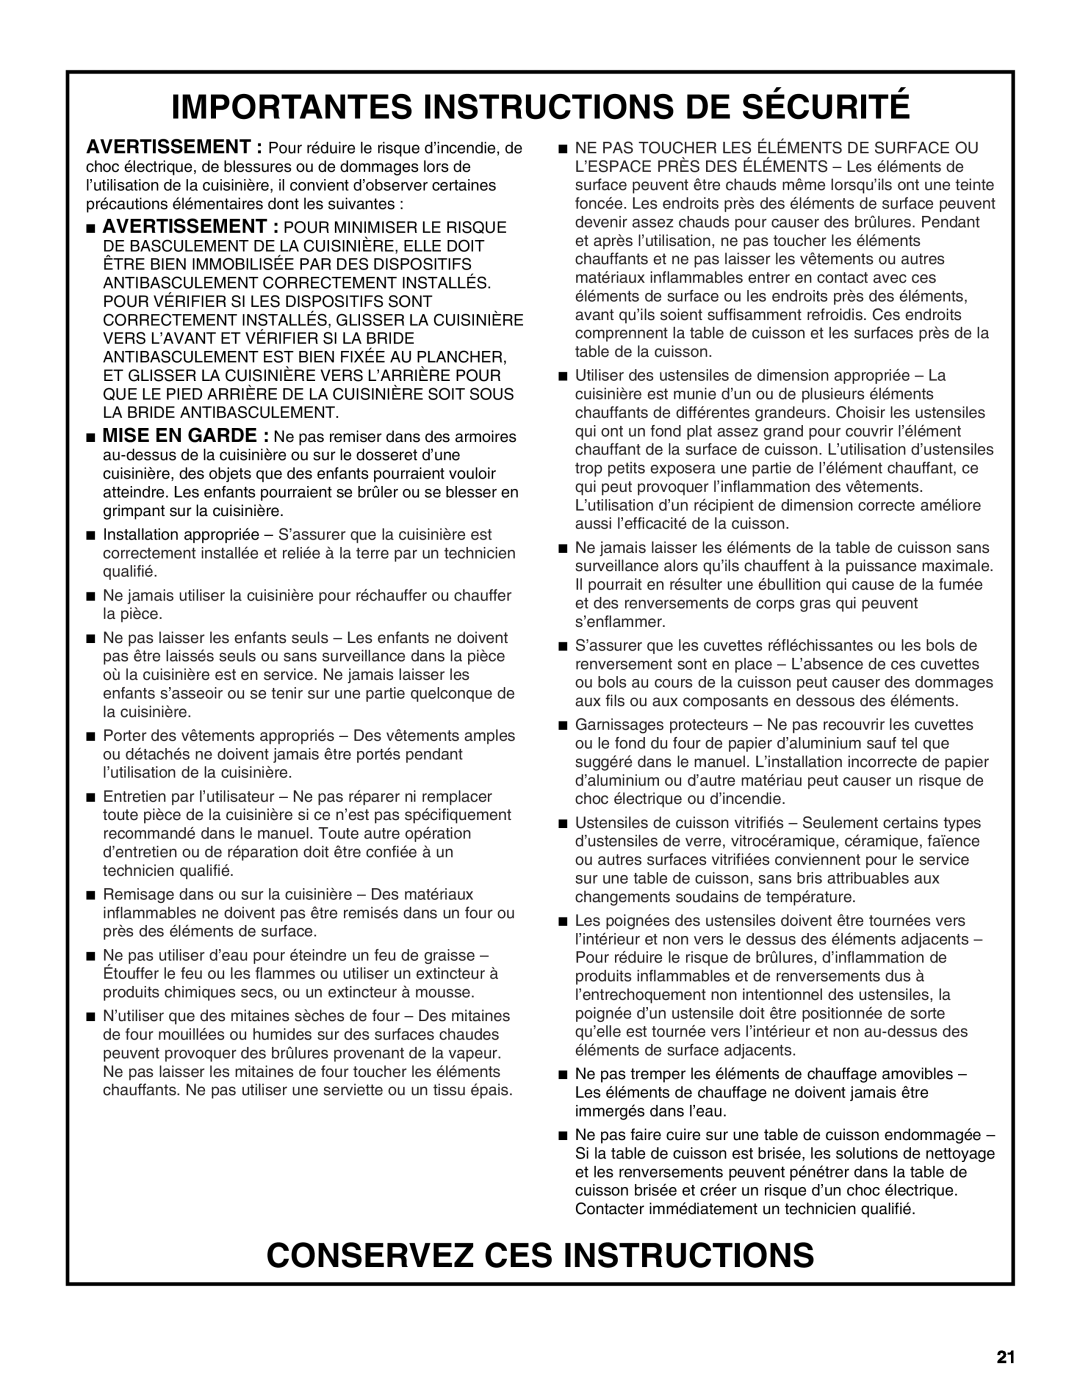 Whirlpool GY397LXUS manual Importantes Instructions De Sécurité, Conservez Ces Instructions 